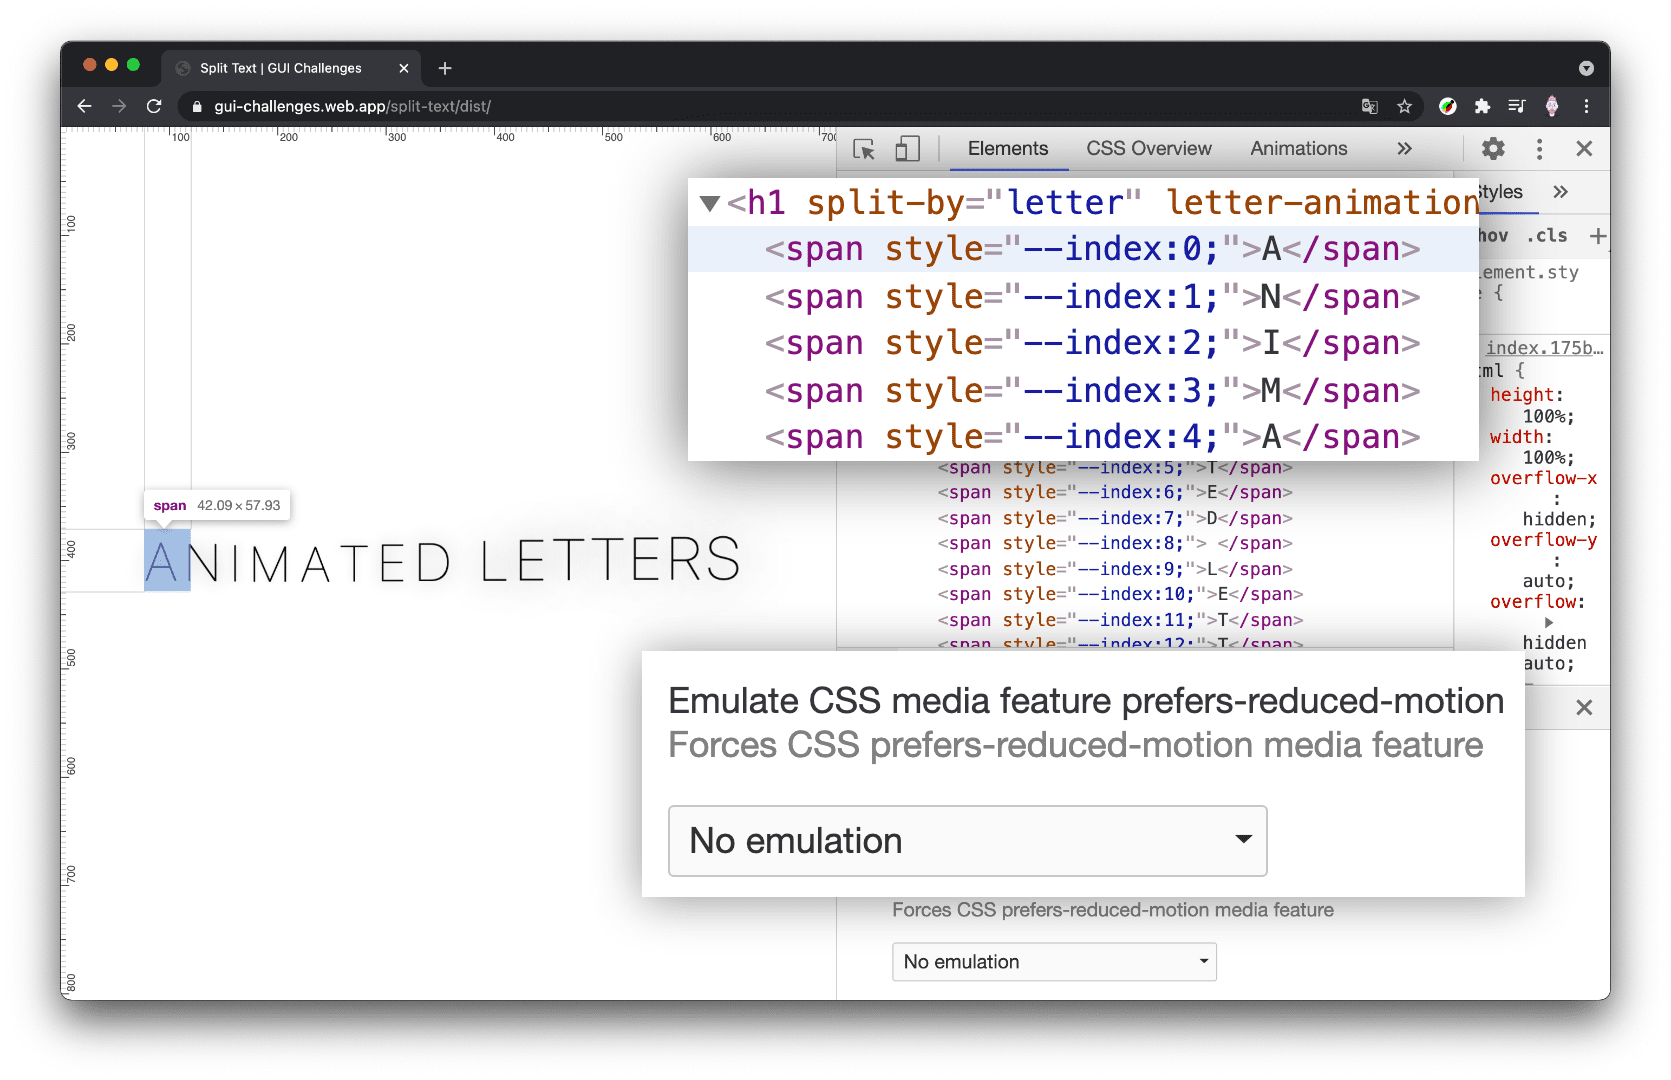 zrzut ekranu z narzędziami deweloperskimi w Chrome z otwartym panelem Elementy i zmniejszonym ruchem ustawionym na „reduce” (redukcja), a film h1 jest widoczny bez podziału